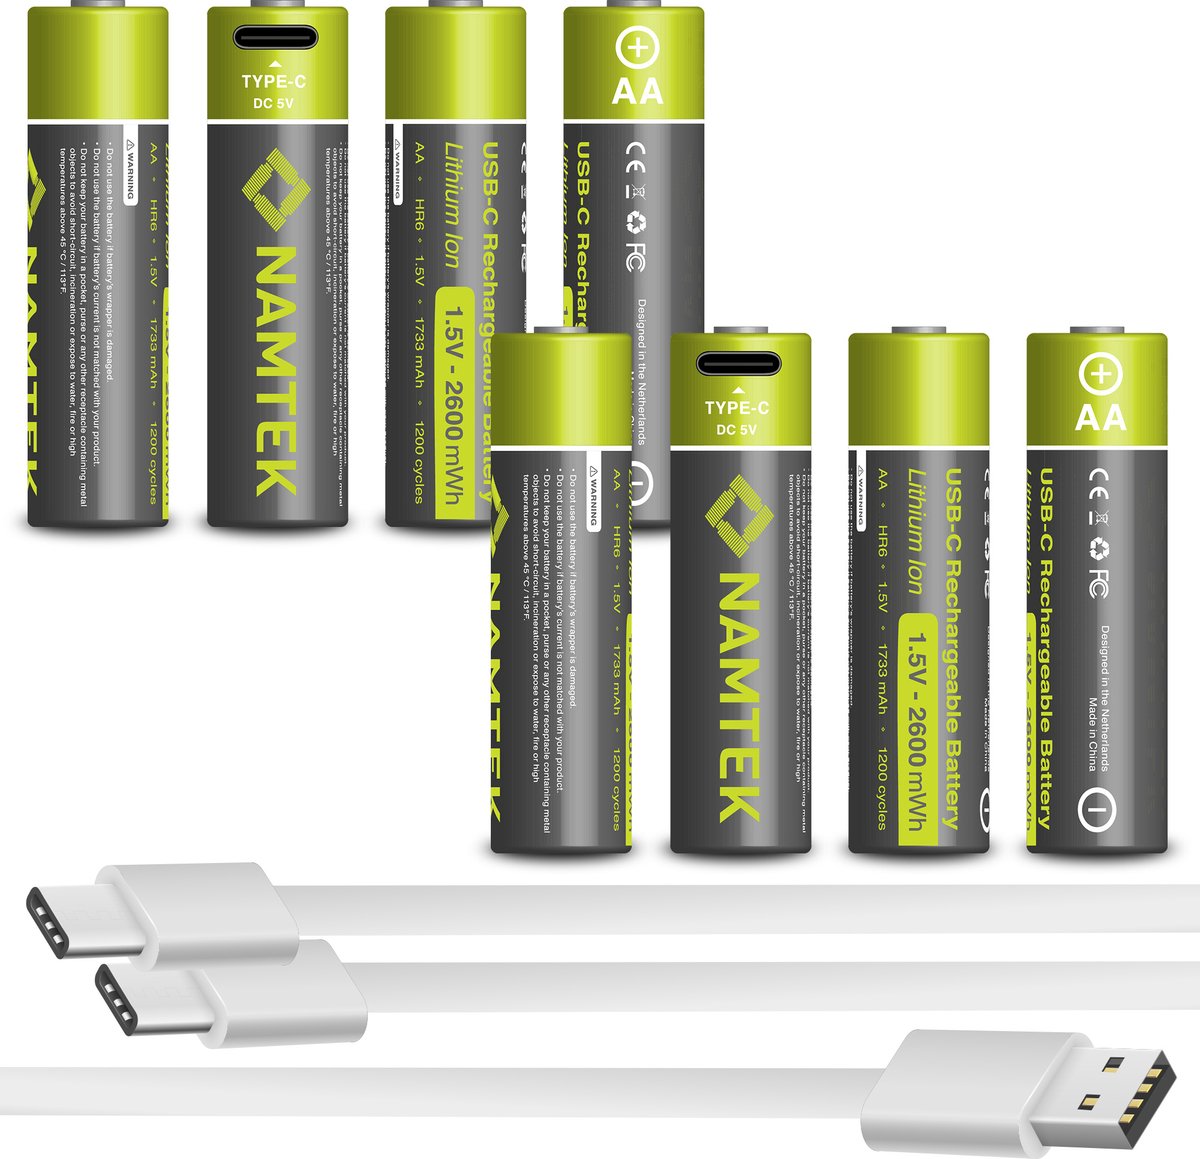 Namtek Oplaadbare batterijen AA 1.5V 2600 mWh met USB Type-C Kabel opladen - Lithium USB batterijen - Duurzame Keuze - 8 stuks